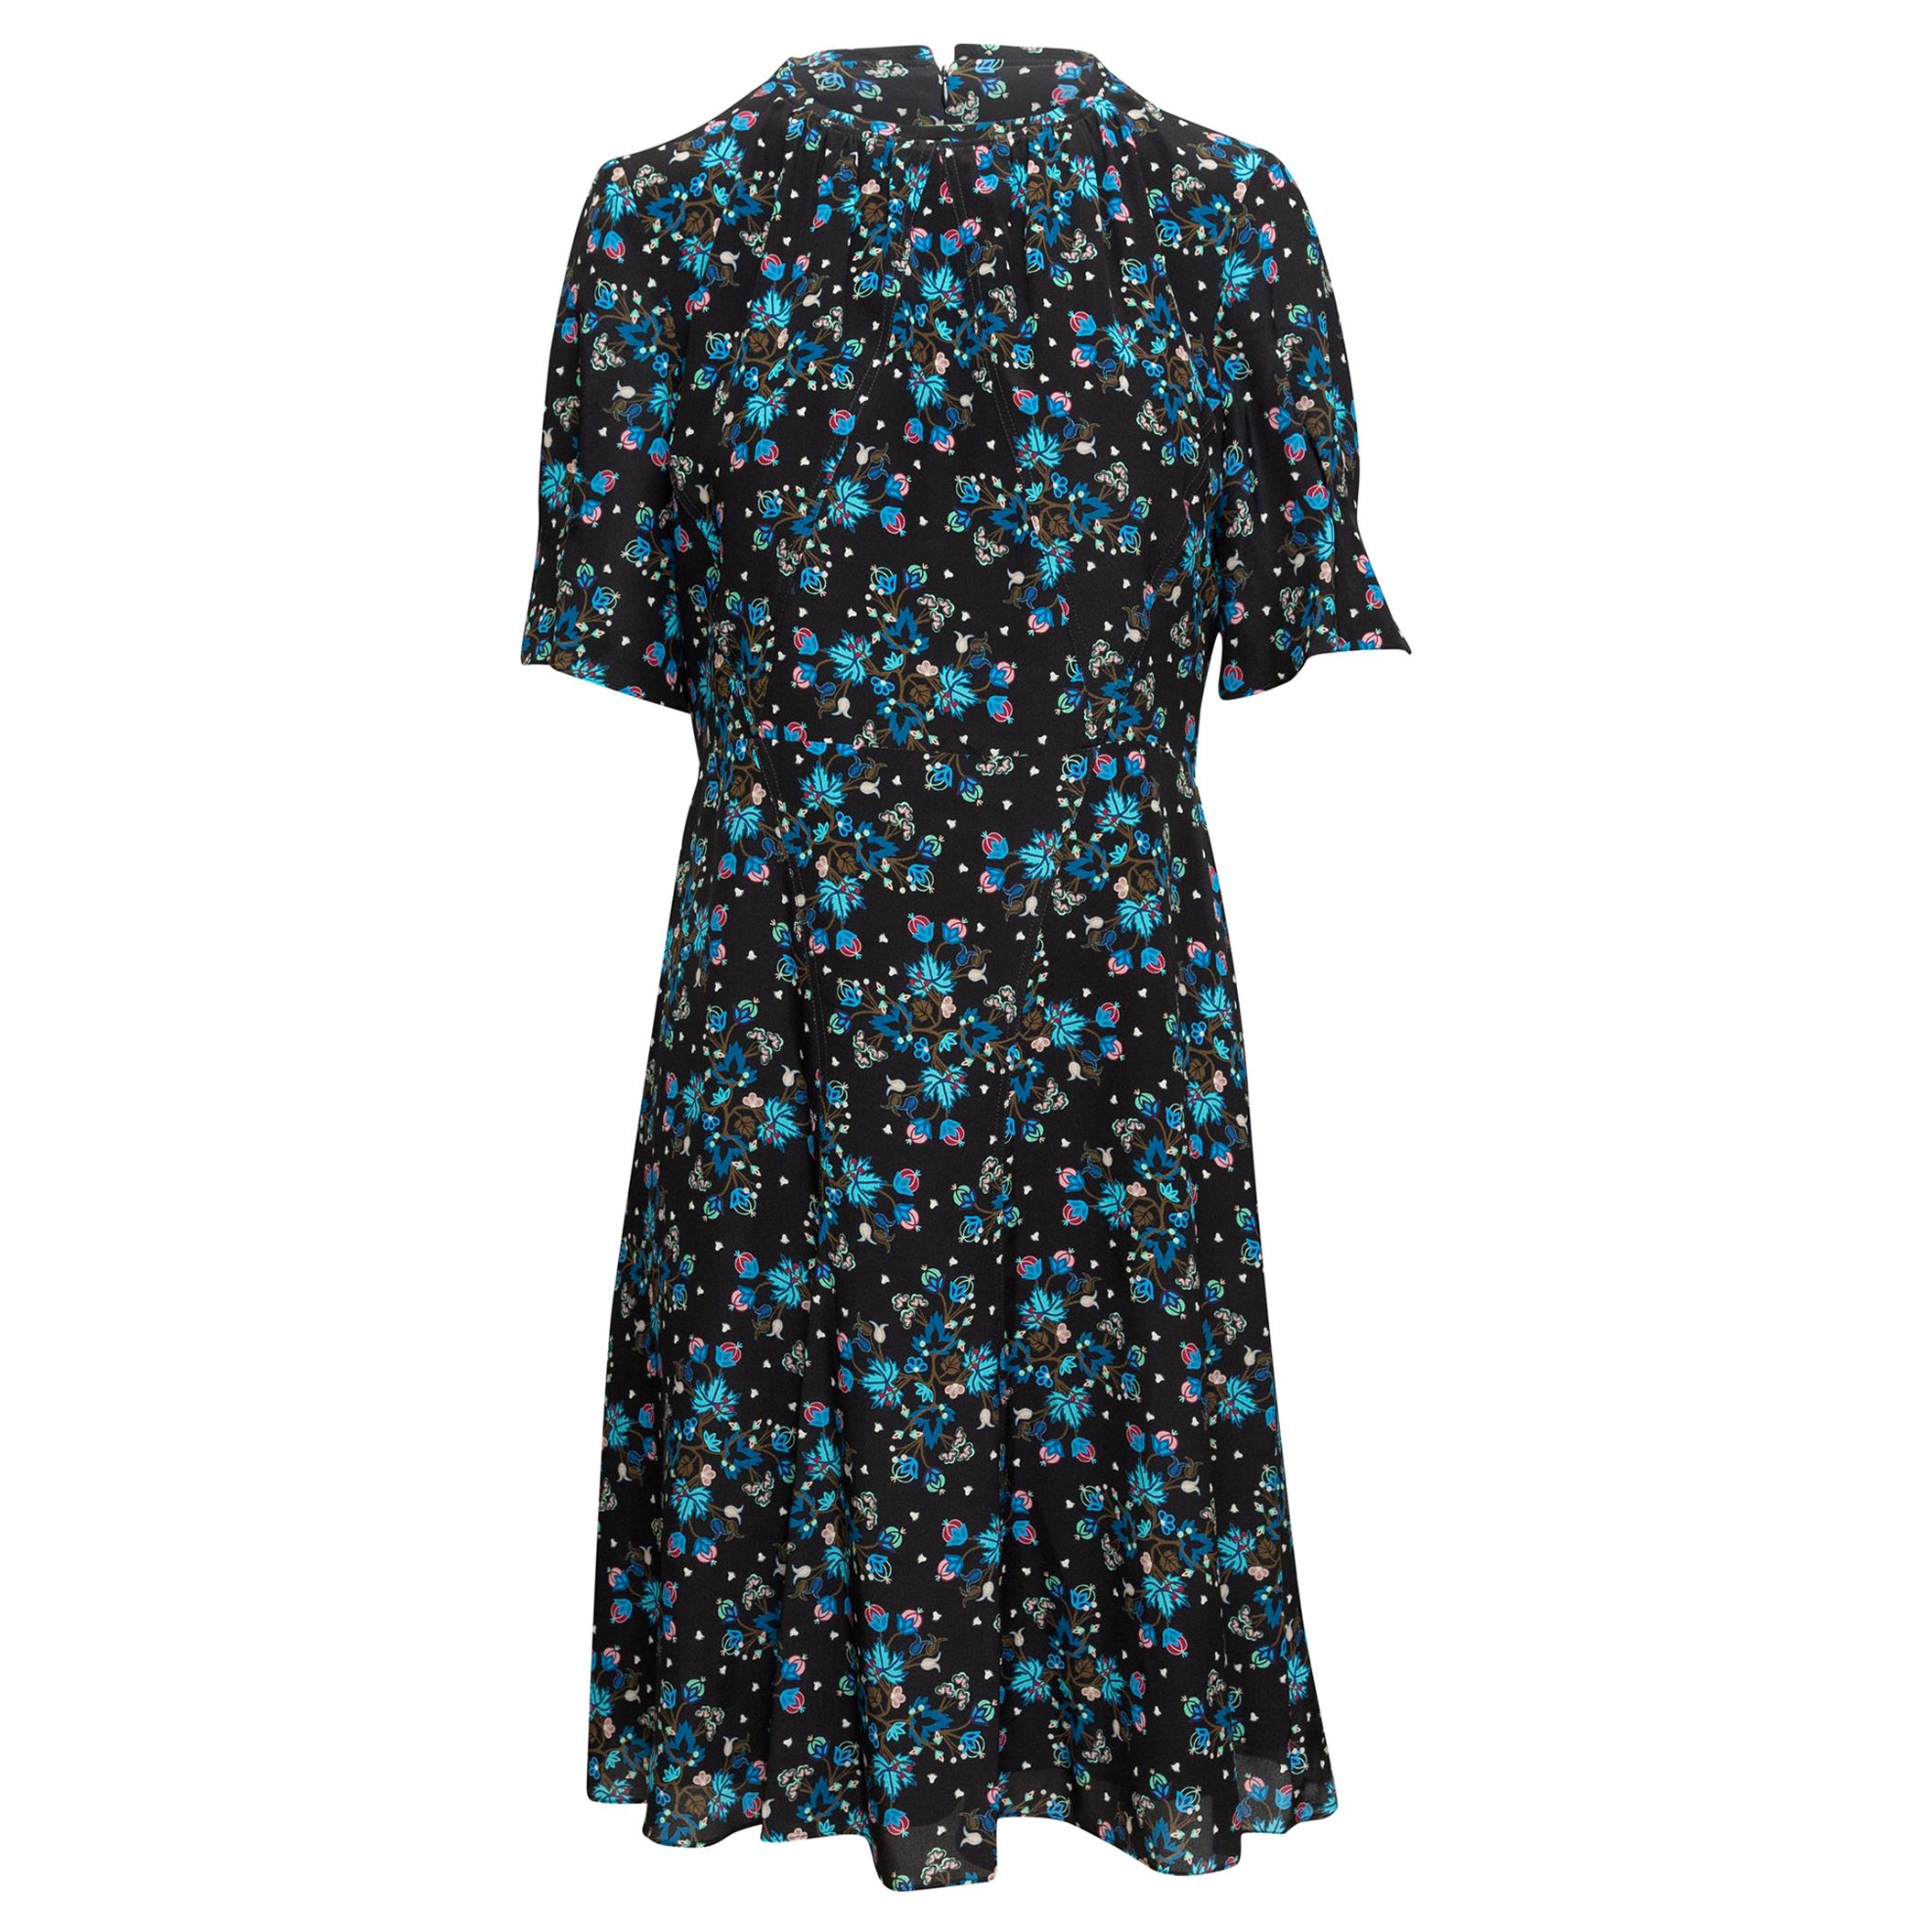  Altuzarra Black & Multicolor Silk Floral Print Dress